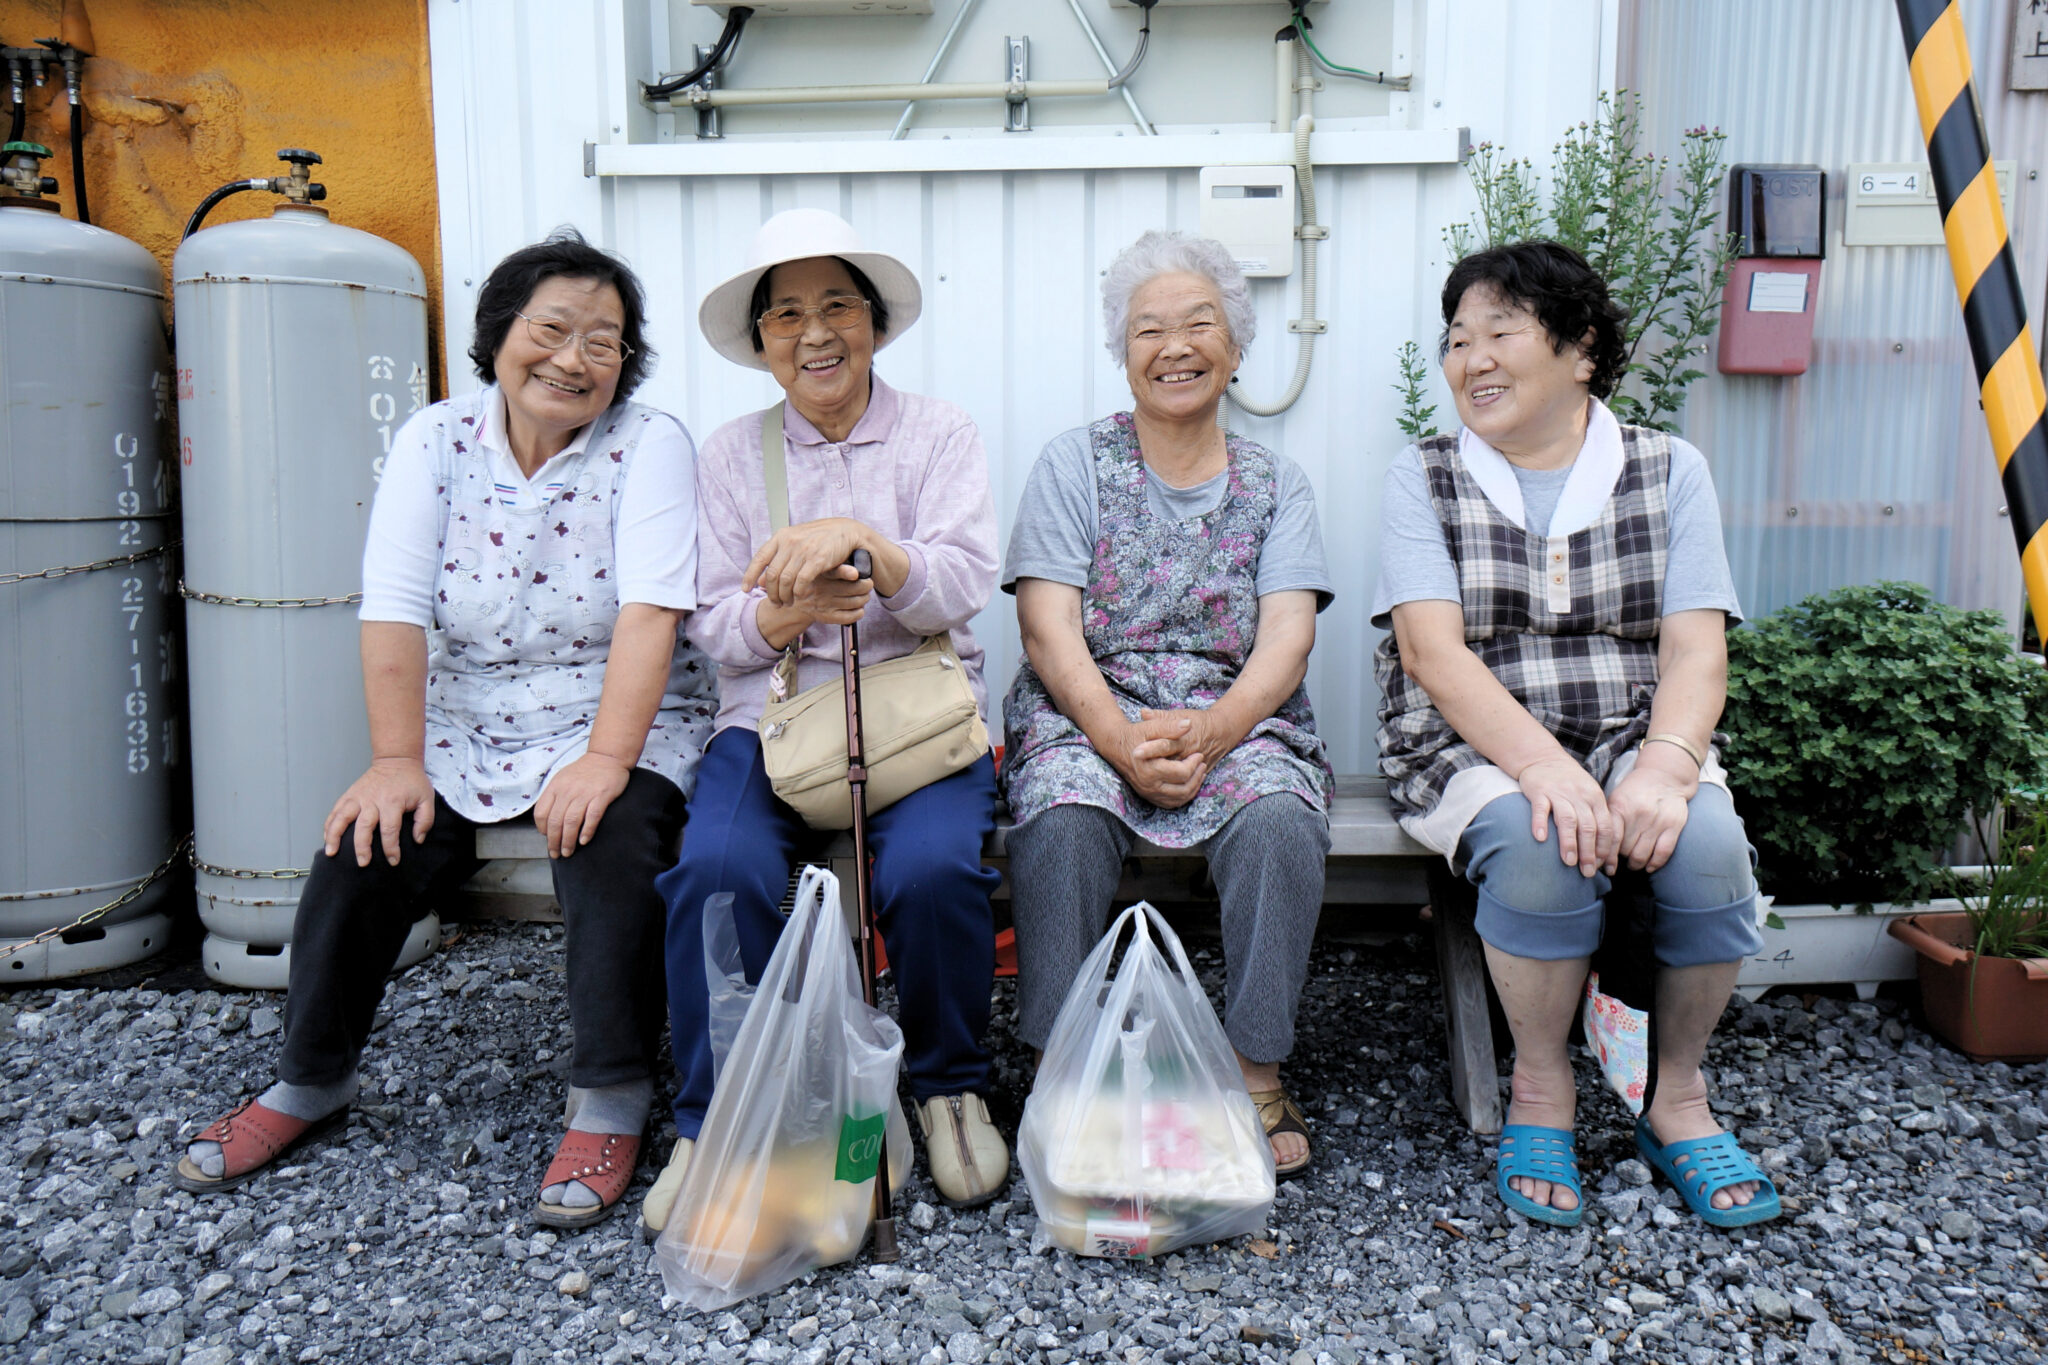 Японские пожилые мамы. Японские долгожители Окинава. Пожилые японцы. Пожилые люди в Японии. Пенсионеры в Японии.